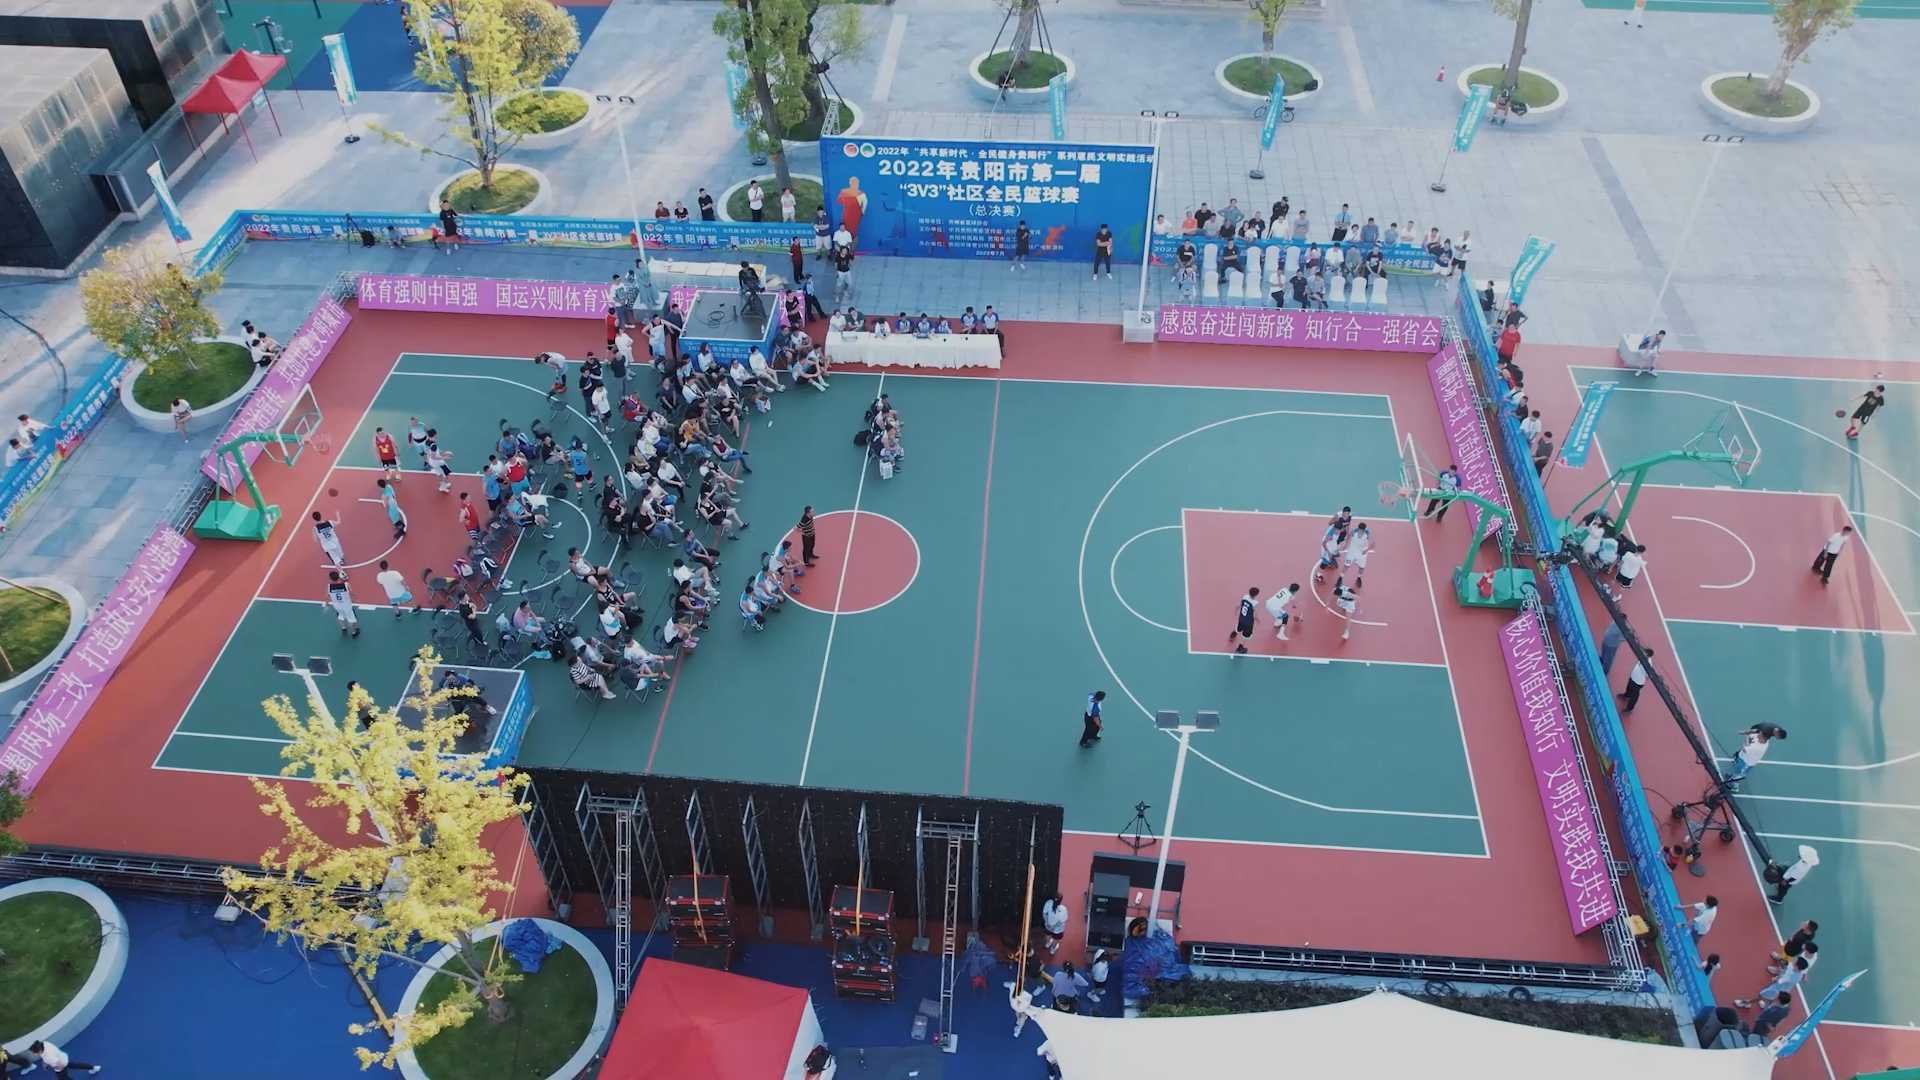 贵阳市第一届“3V3”社区全民篮球赛